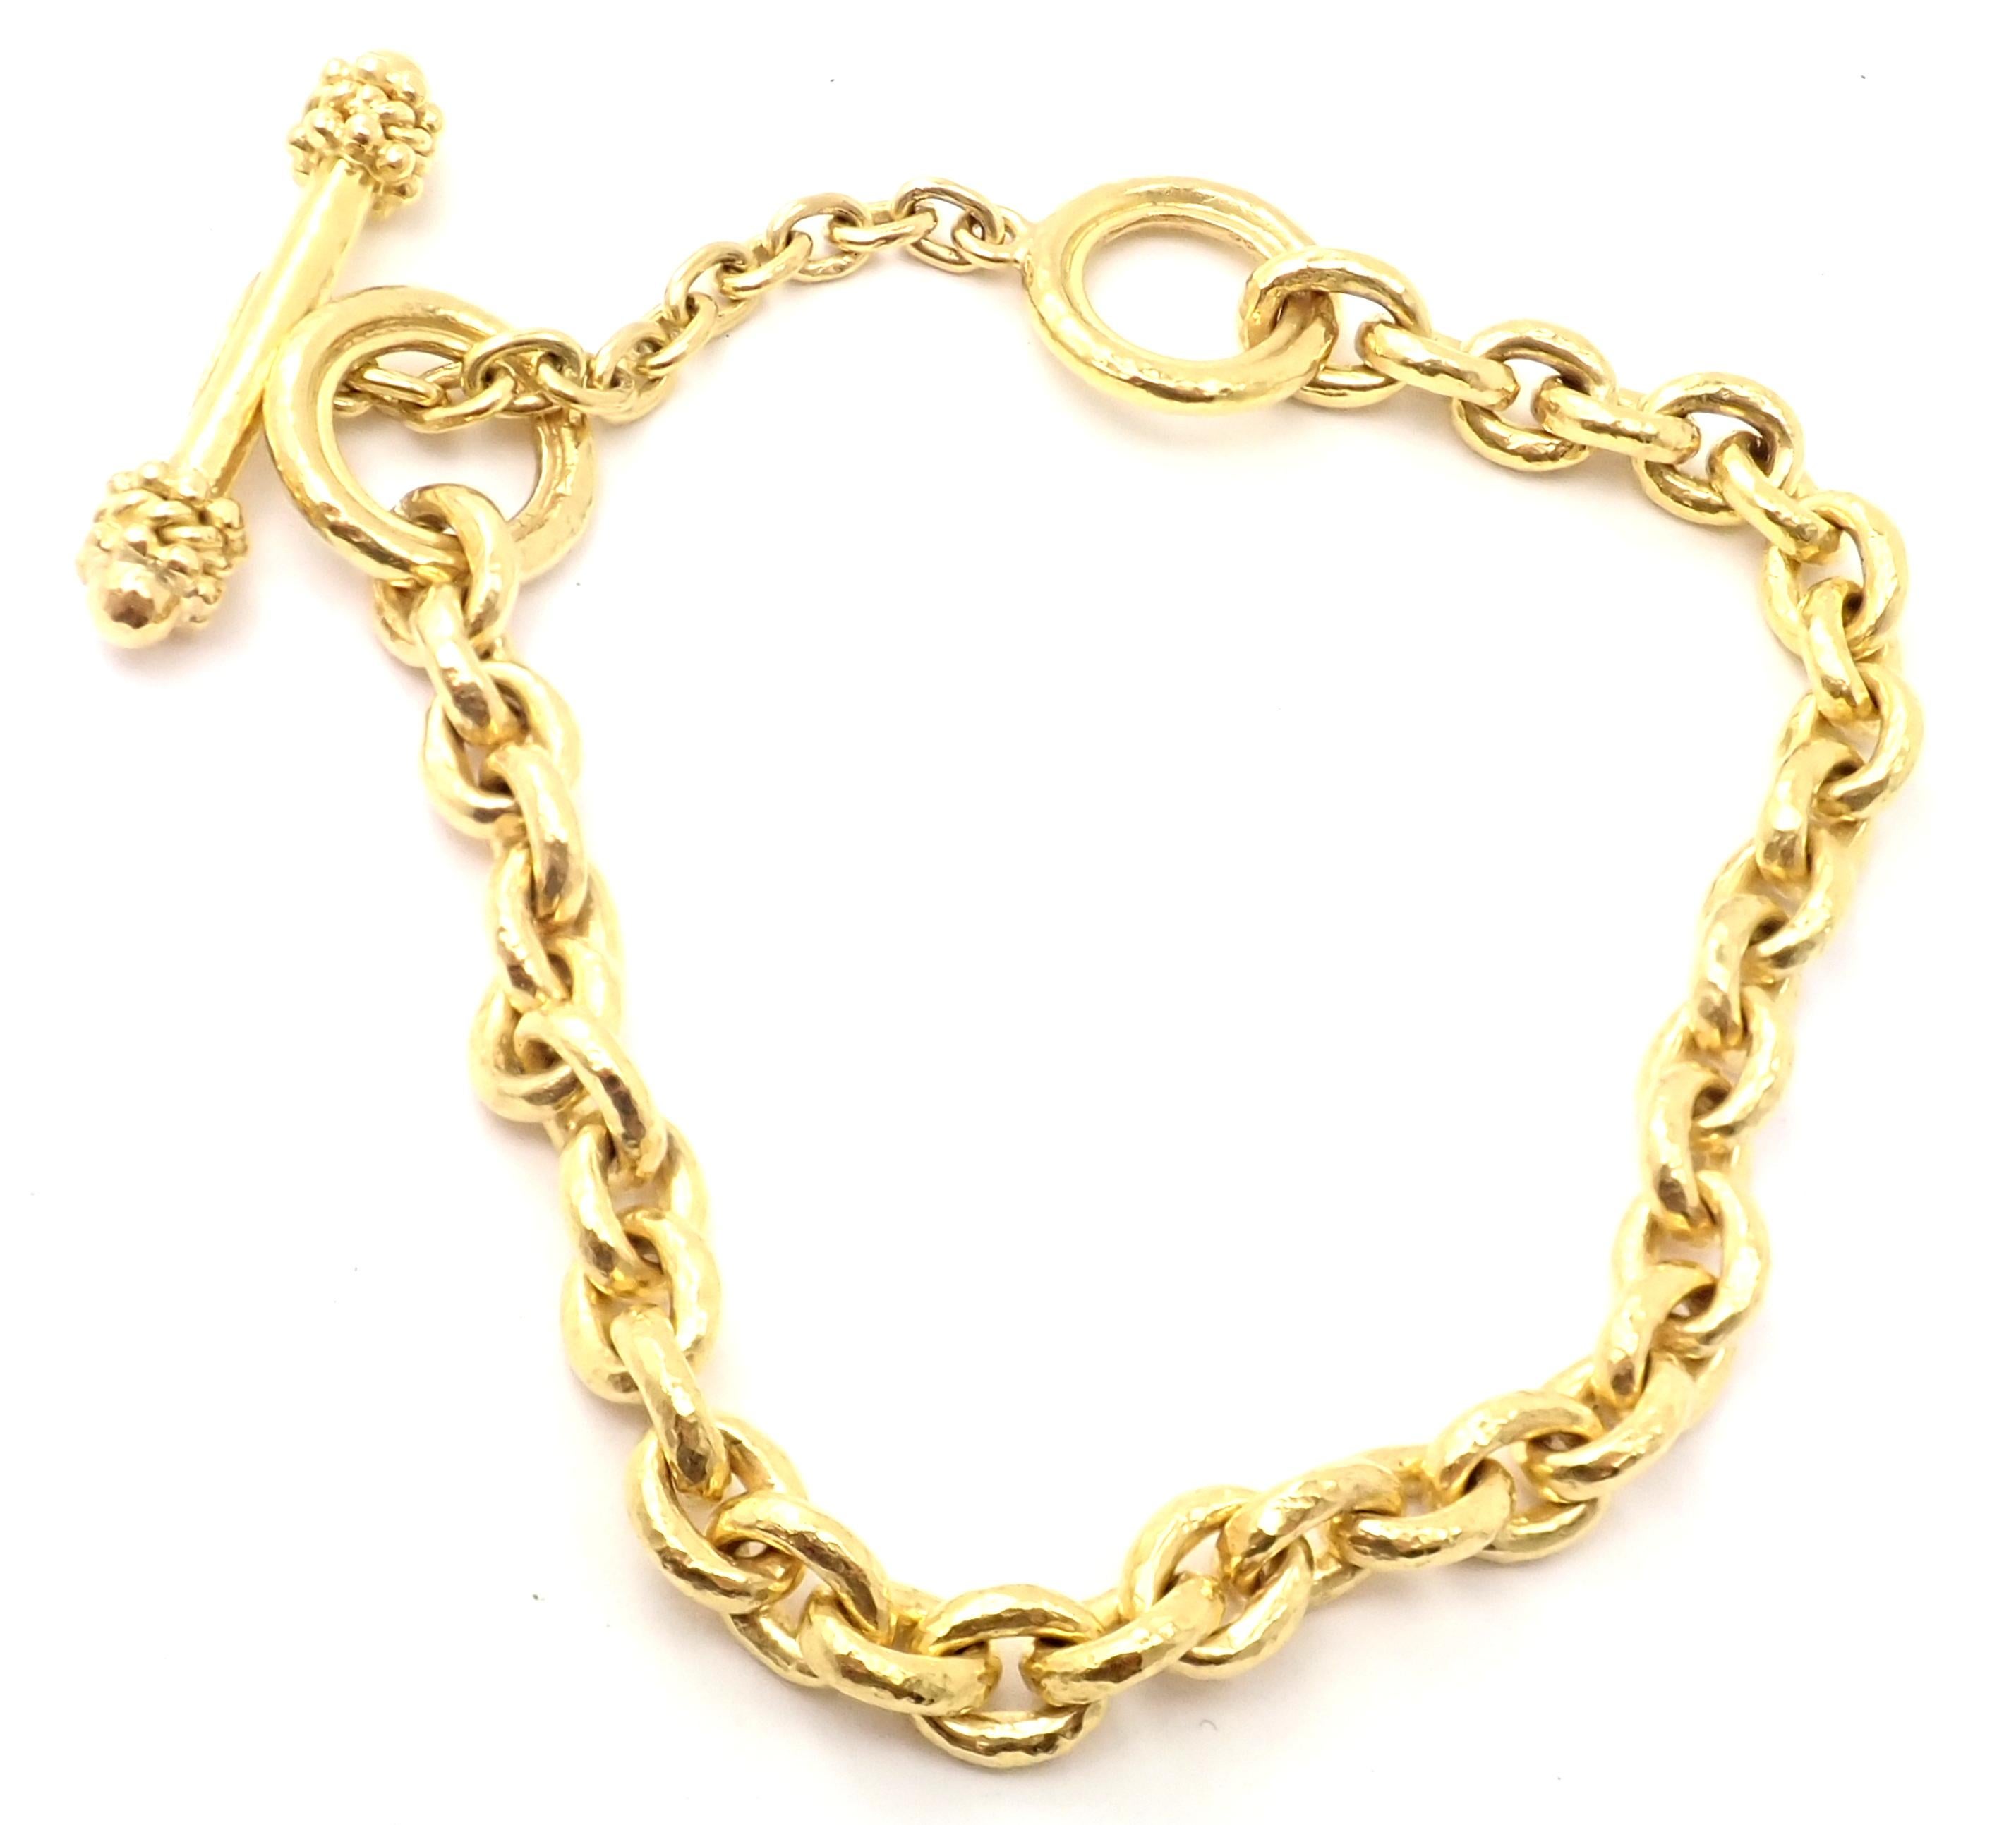 19k Yellow Gold Toggle Link Bracelet by Elizabeth Locke. 
Details: 
Length: 8.5